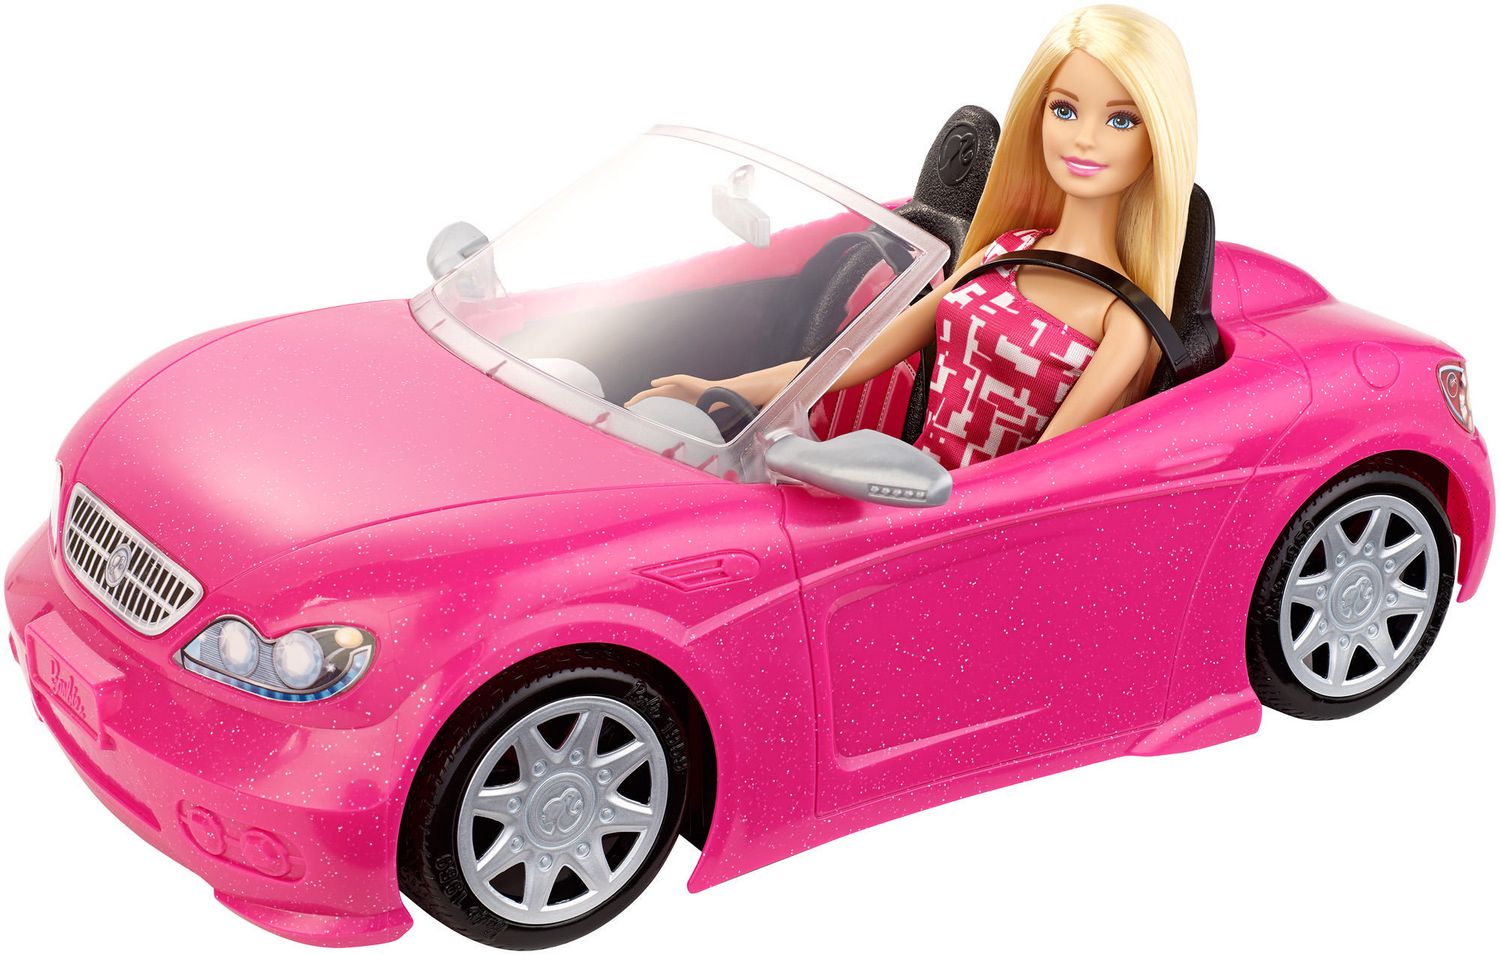 barbie car for girl